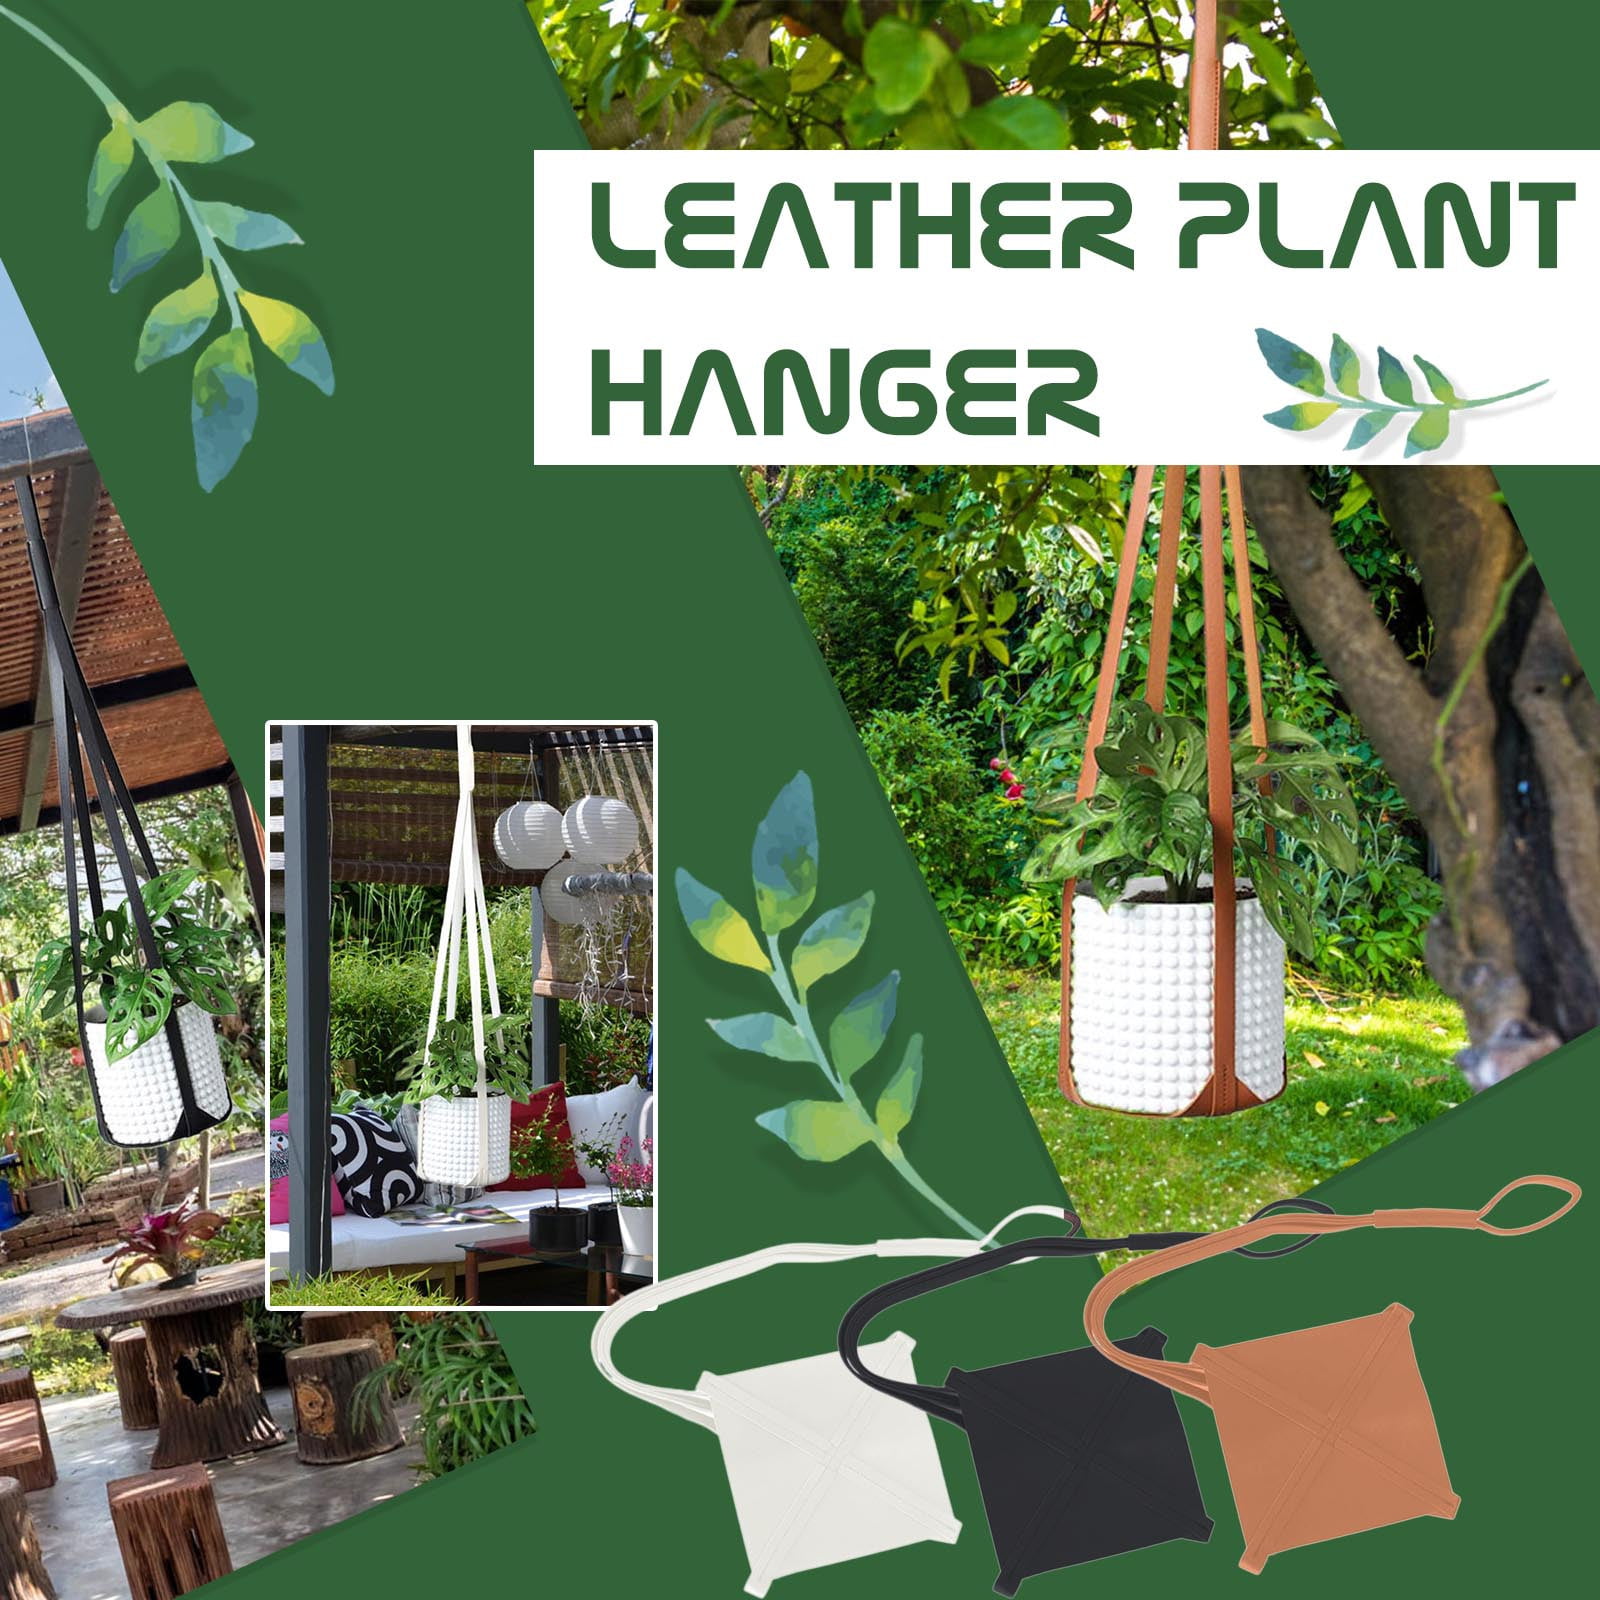 Hot Leather Plant Hanger Hanging Planter Flower Pot Holder Home Decor For Indoor 